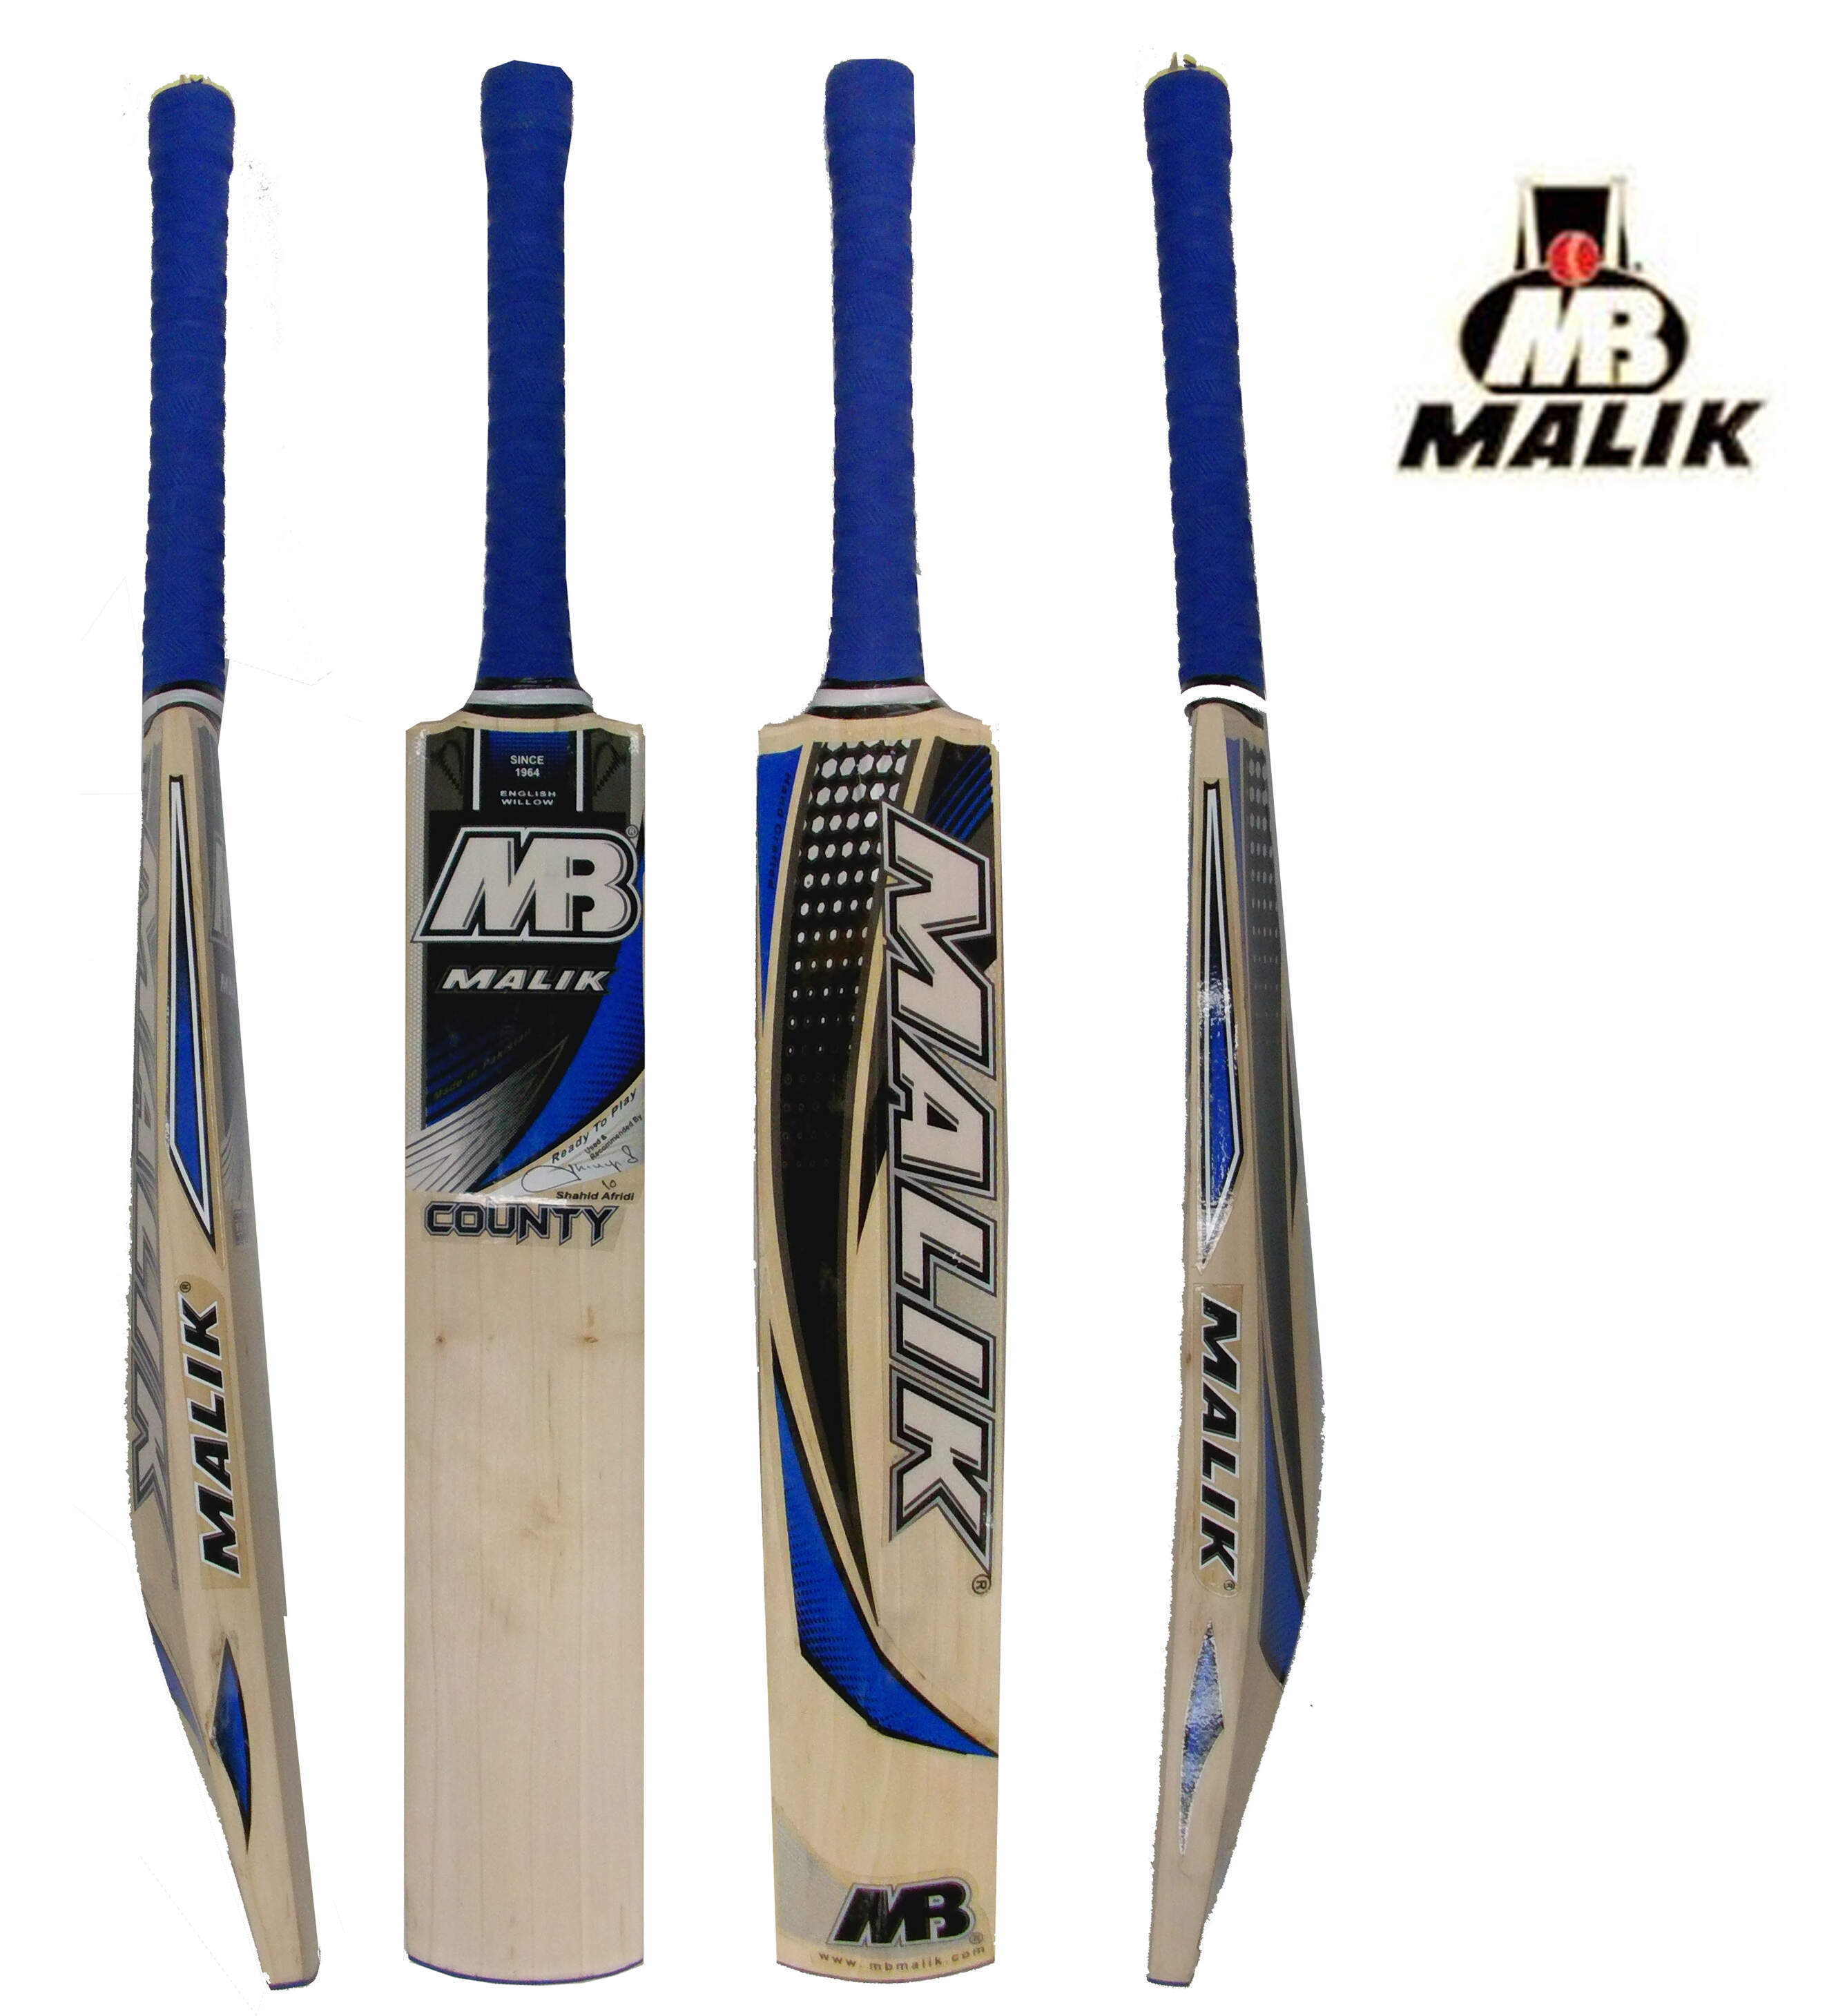 Mb Malik County English Willow Cricket Bat SH 2.8 Lbs Free Bag